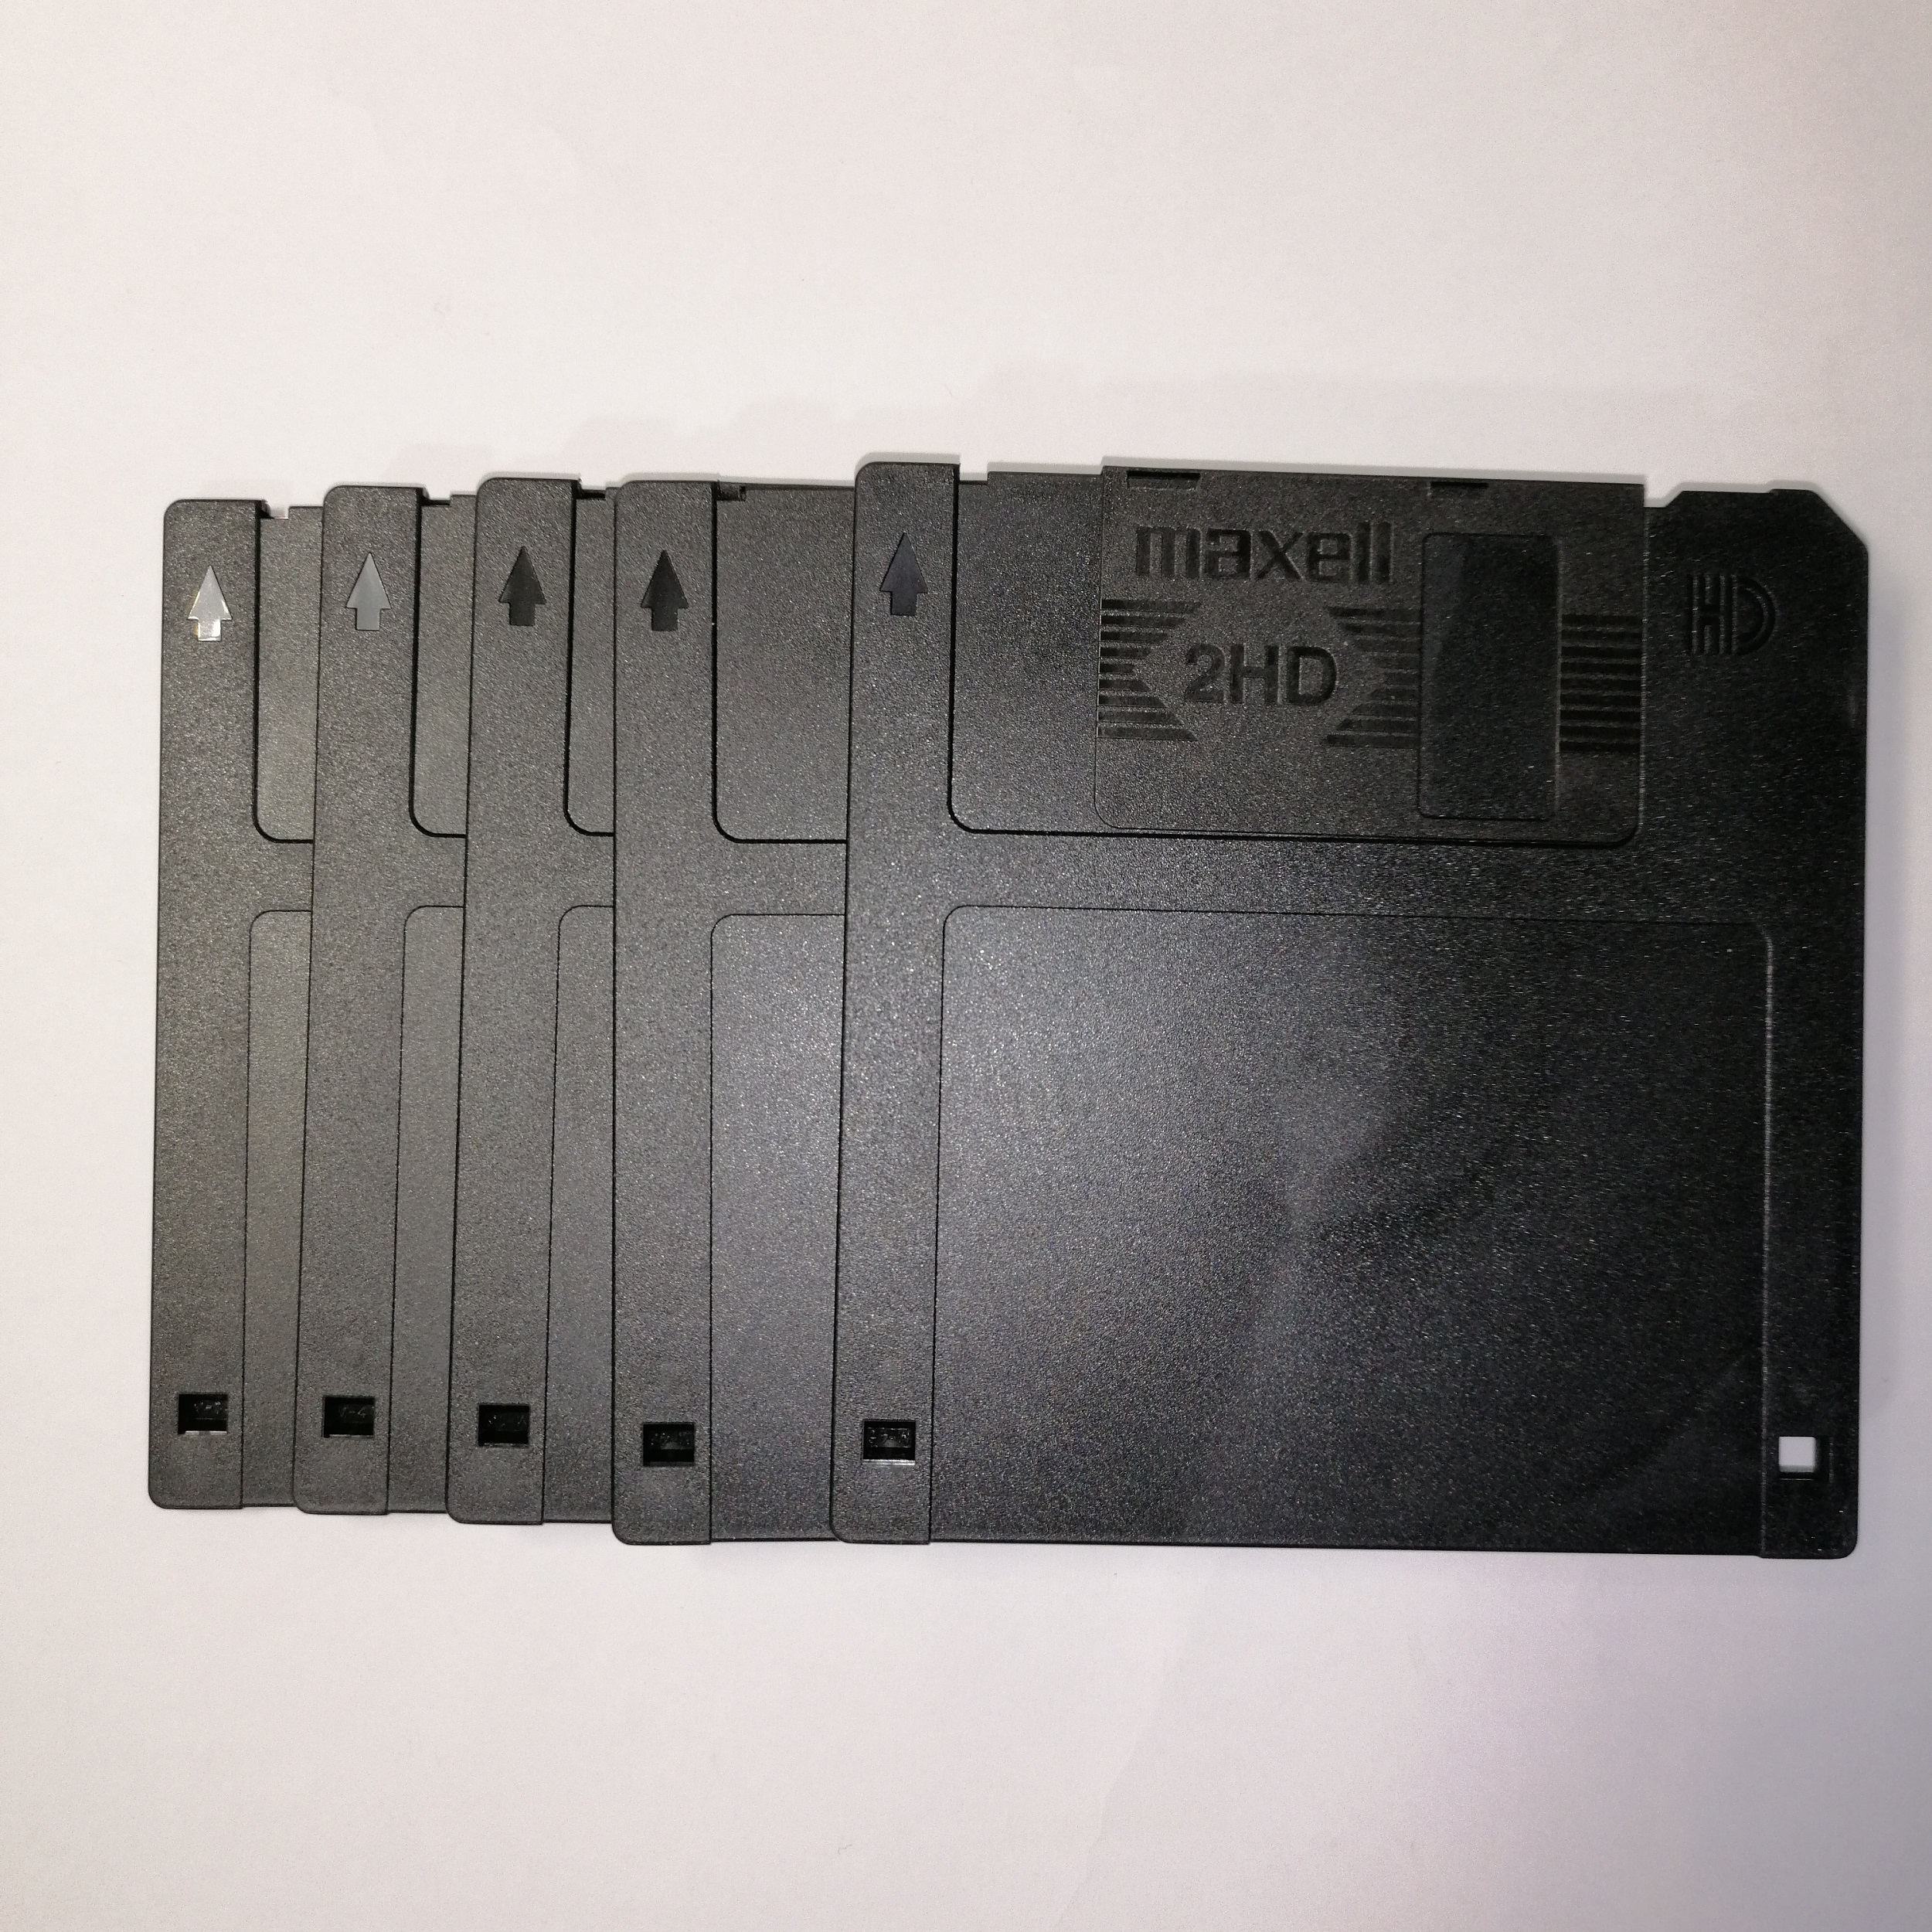 فلاپی دیسکت بدون قاب مکسل مدل 2HD-1.44mb بسته 5 عددی